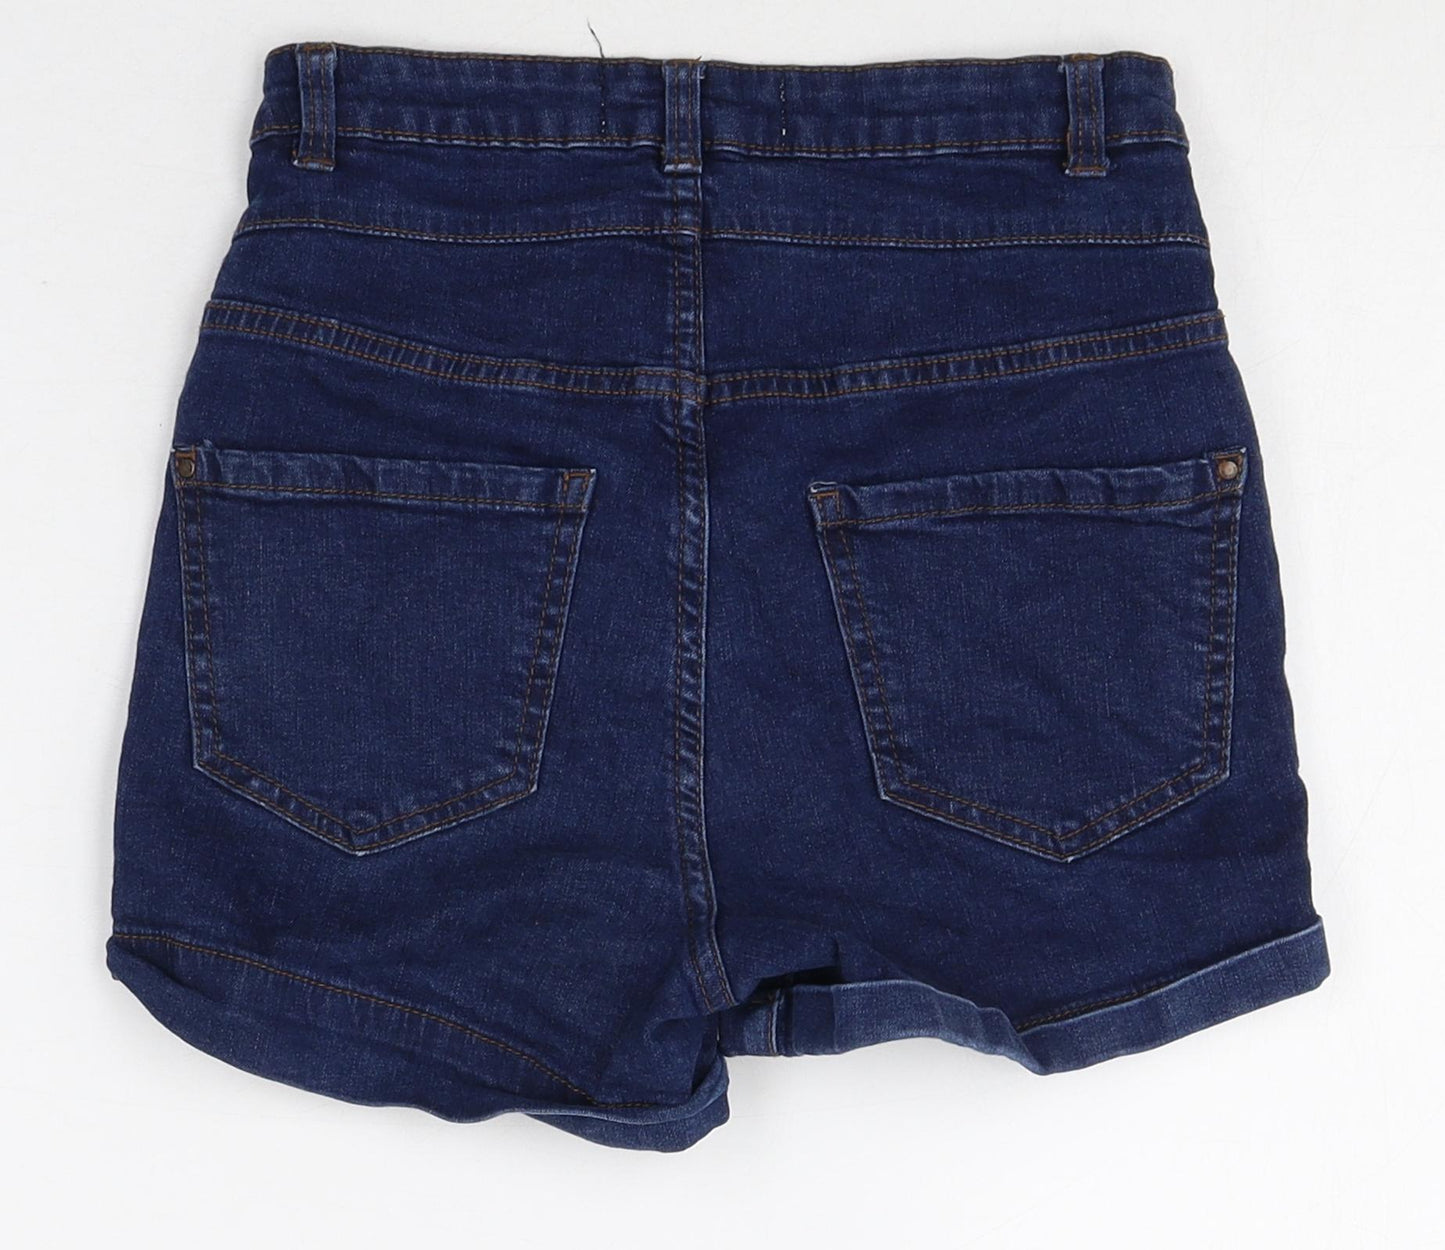 New Look Womens Blue Cotton Sailor Shorts Size 6 Regular Zip